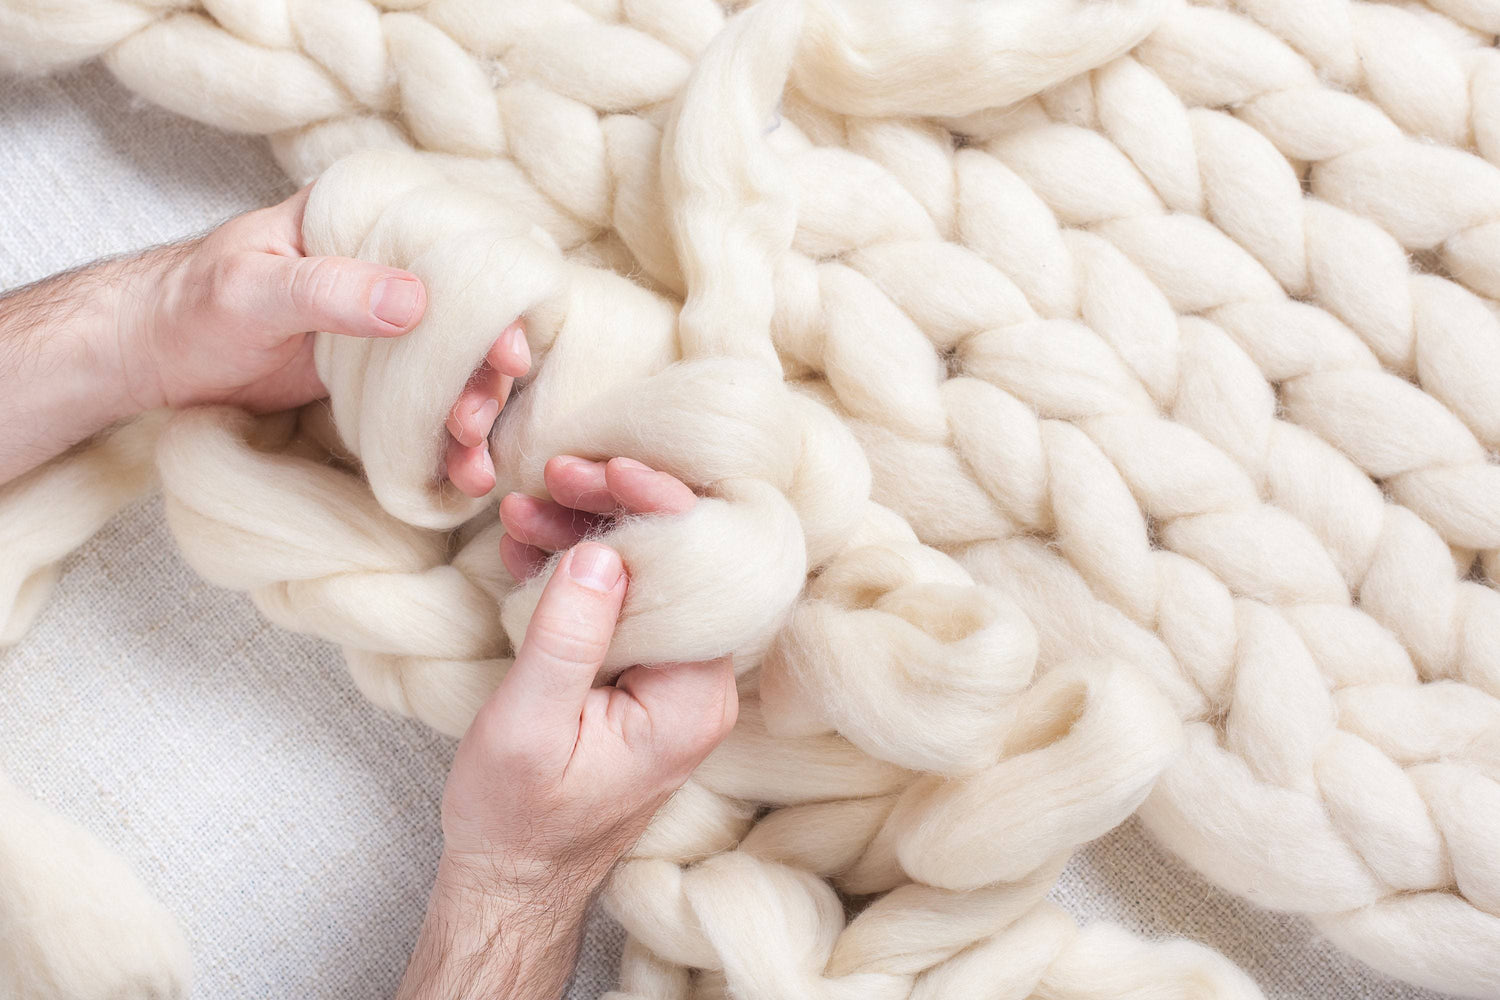 Chunky Wool Yarn Filling Arm Knit Yarn Bulky Giant Wool Yarn Weight Yarn for